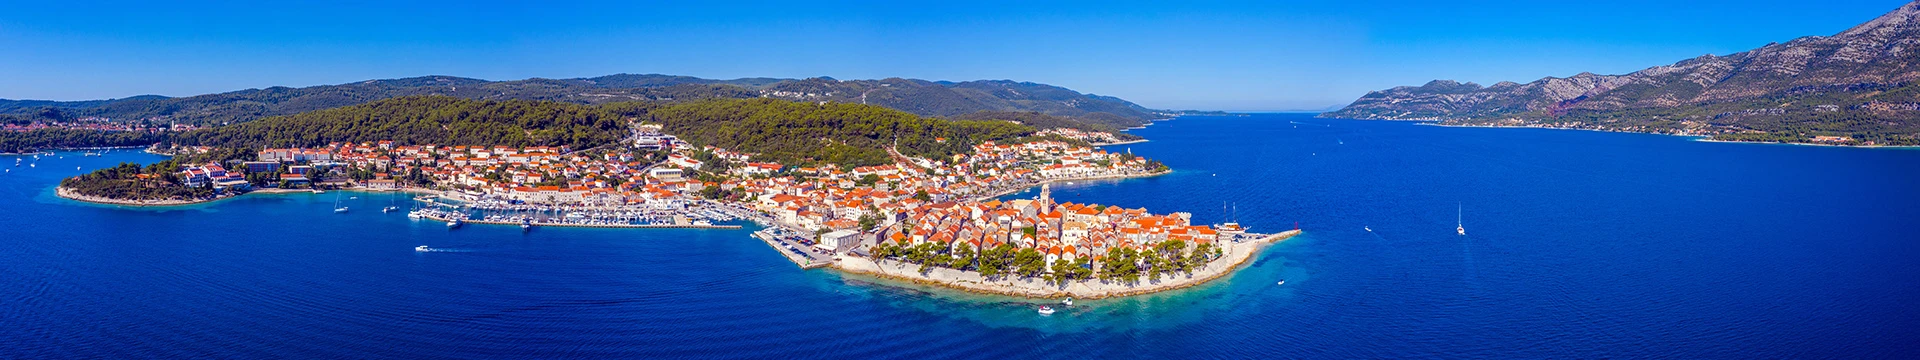 Hotels in Croatia